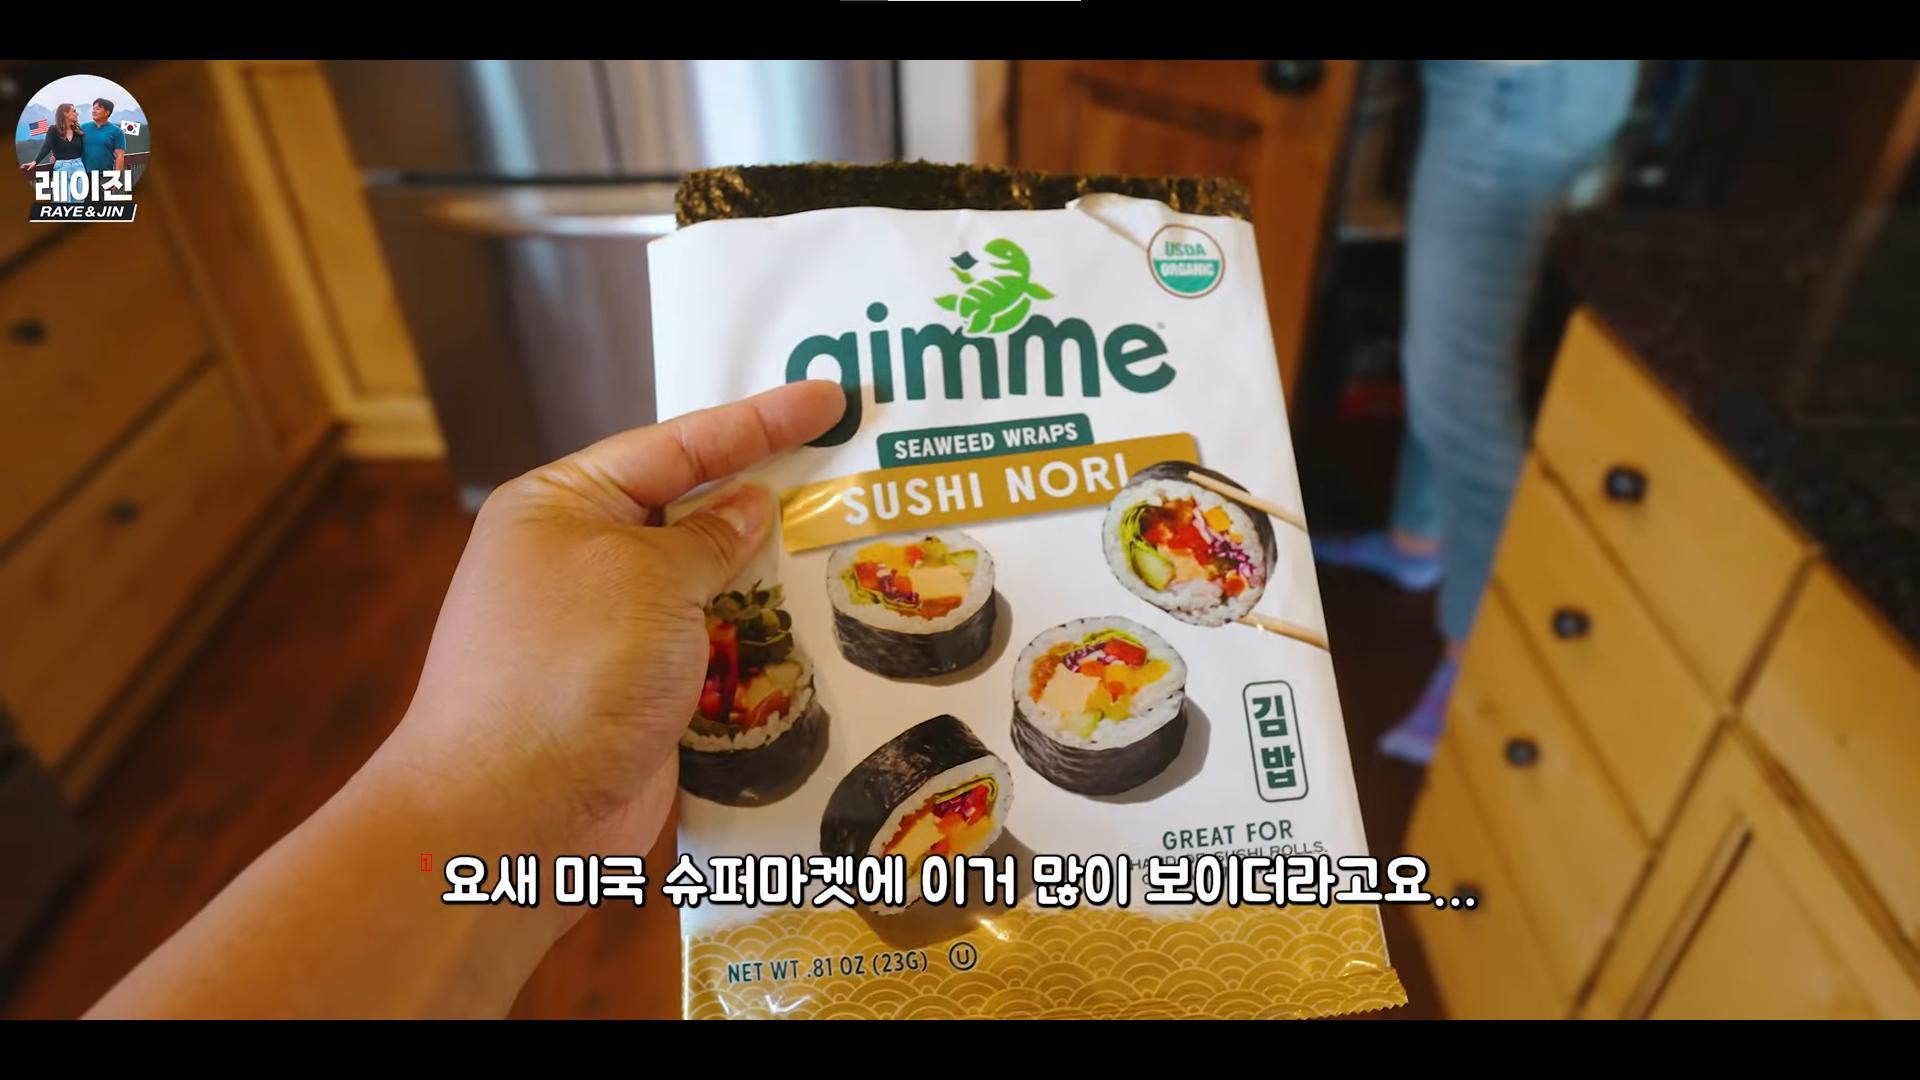 김밥용 김을 ''스시 노리''로 미국에 수출하는 한국 업체